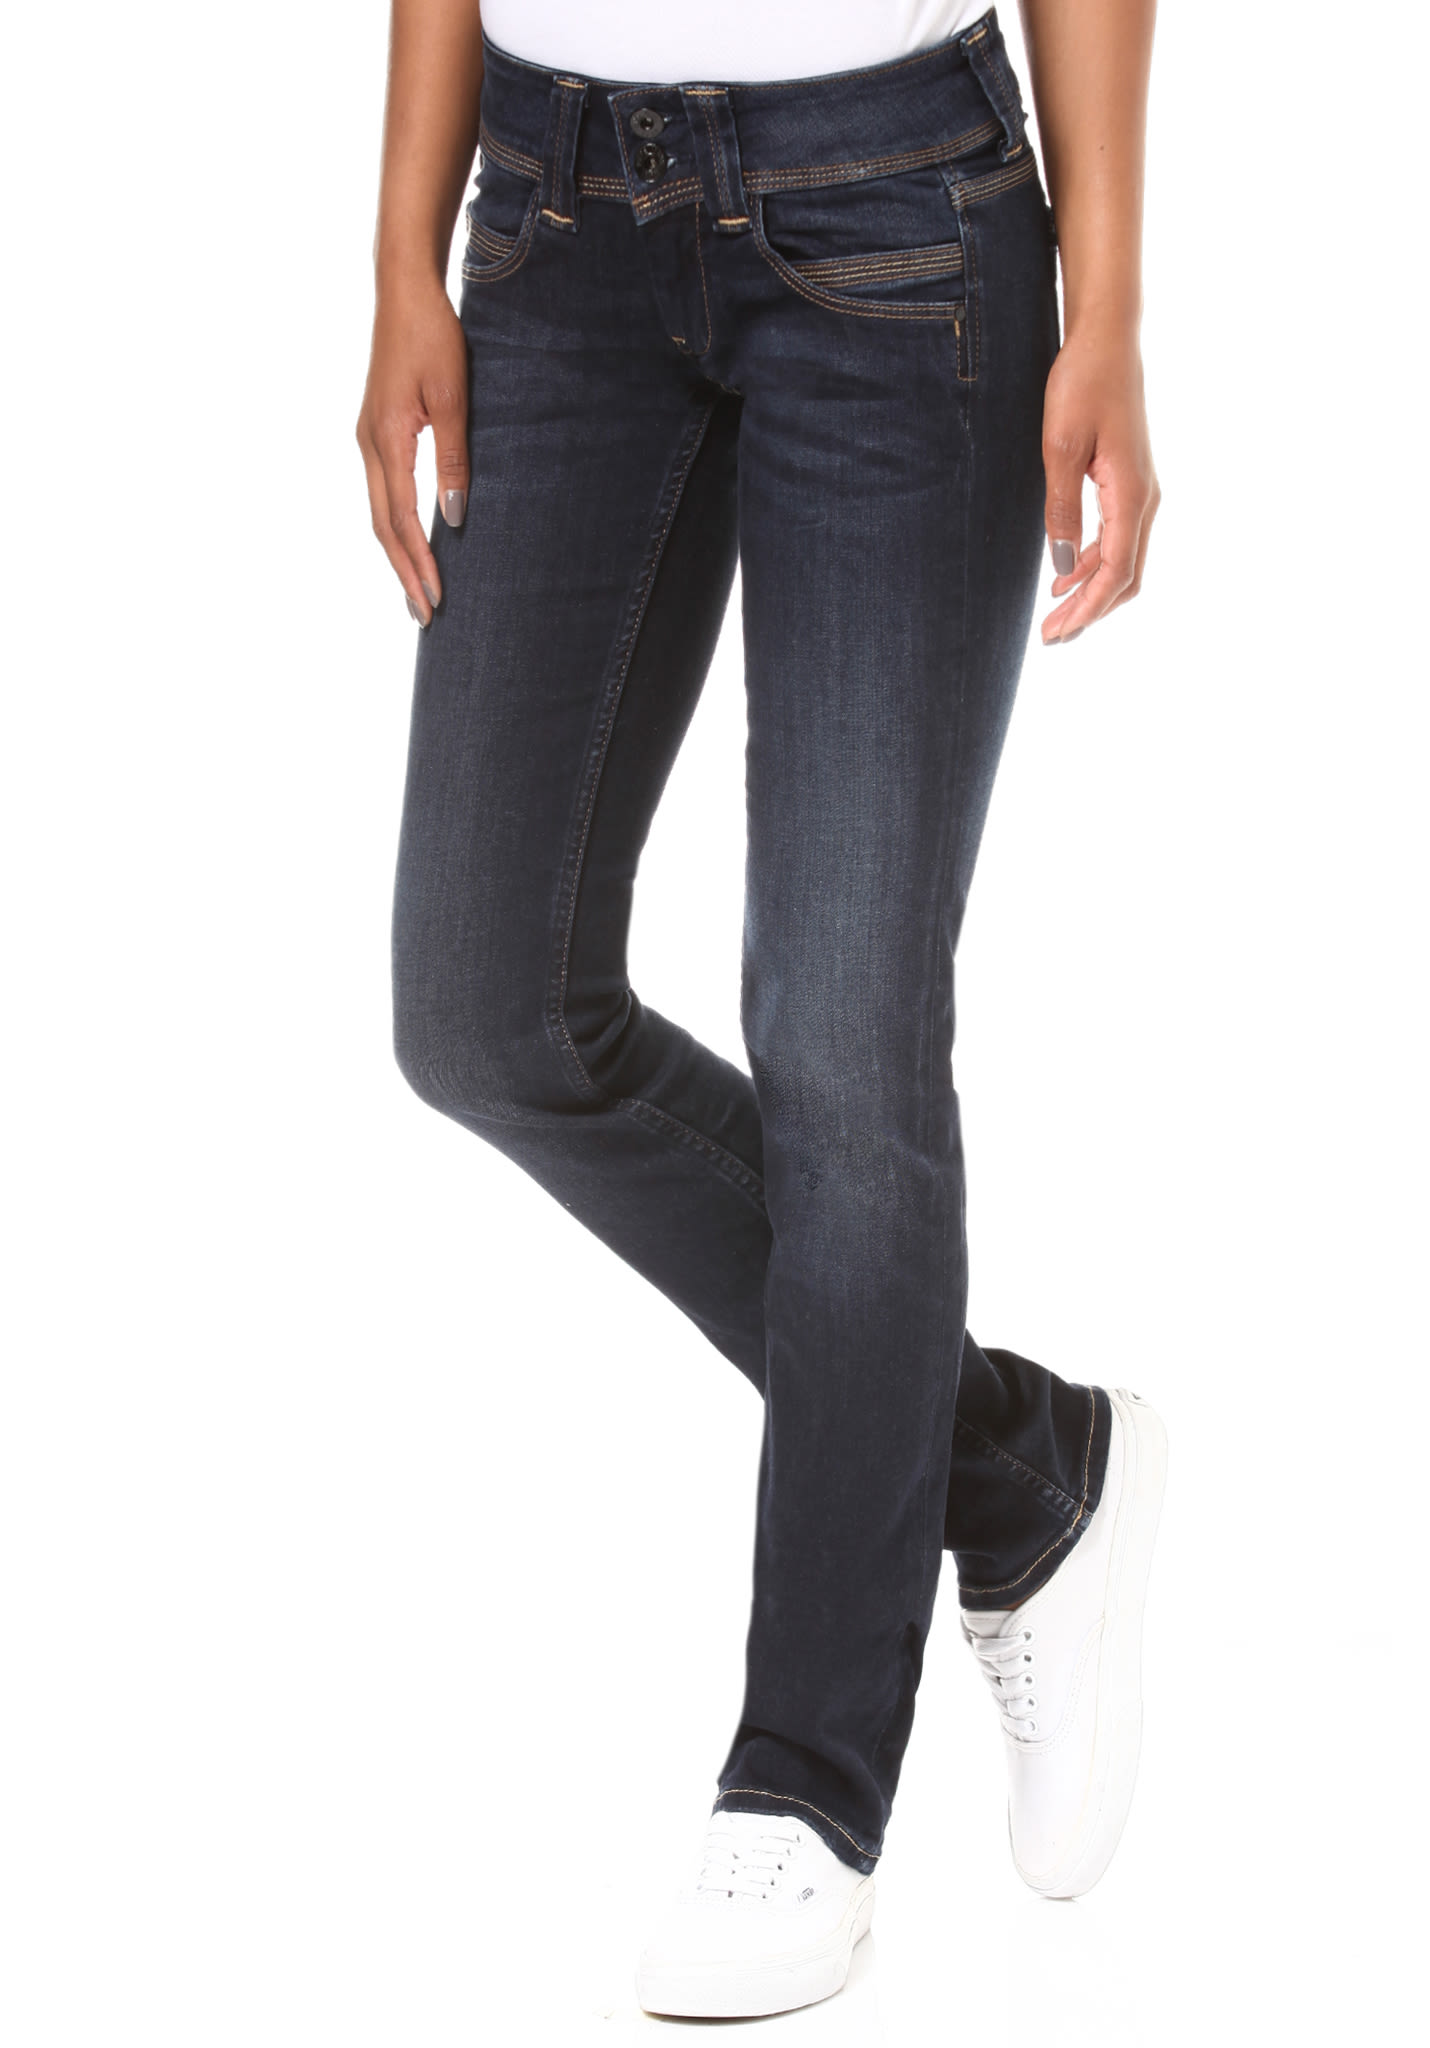 Pepe Jeans Venus pepe jeans venus - jeans jeans för kvinnor - blå - planet sport NKQHCDE